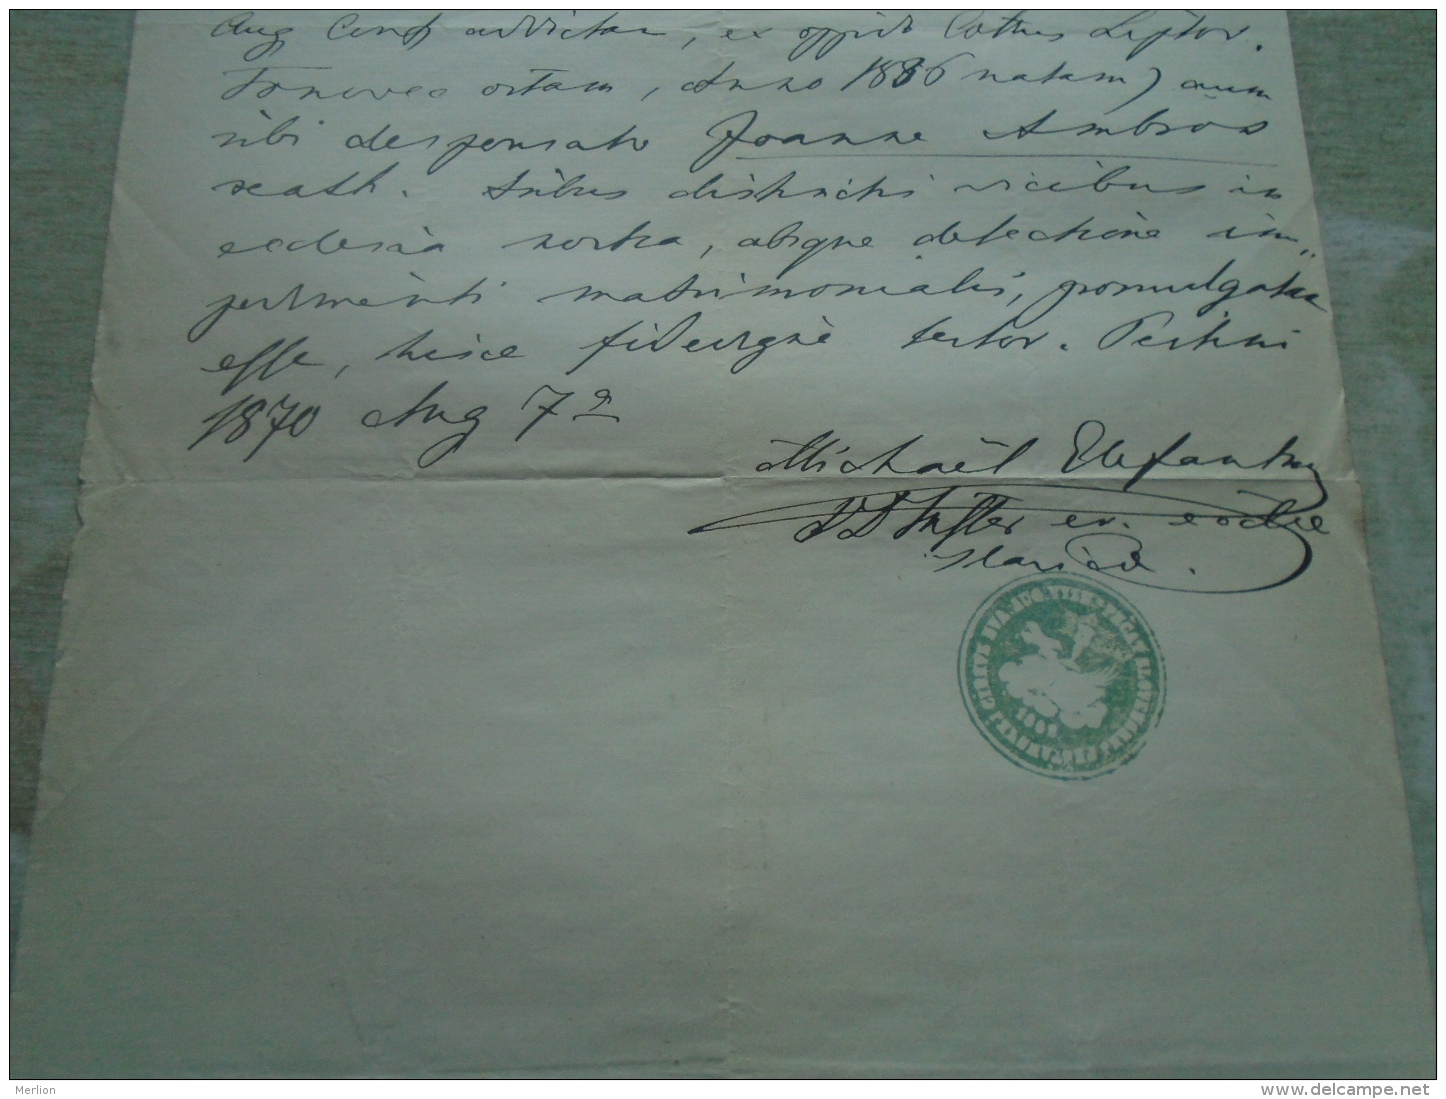 D137988.30 Old Document   Hungary Pest  -Slovak Church - Anna  Vastjar -Joamme  Ambros -1870 - Verlobung